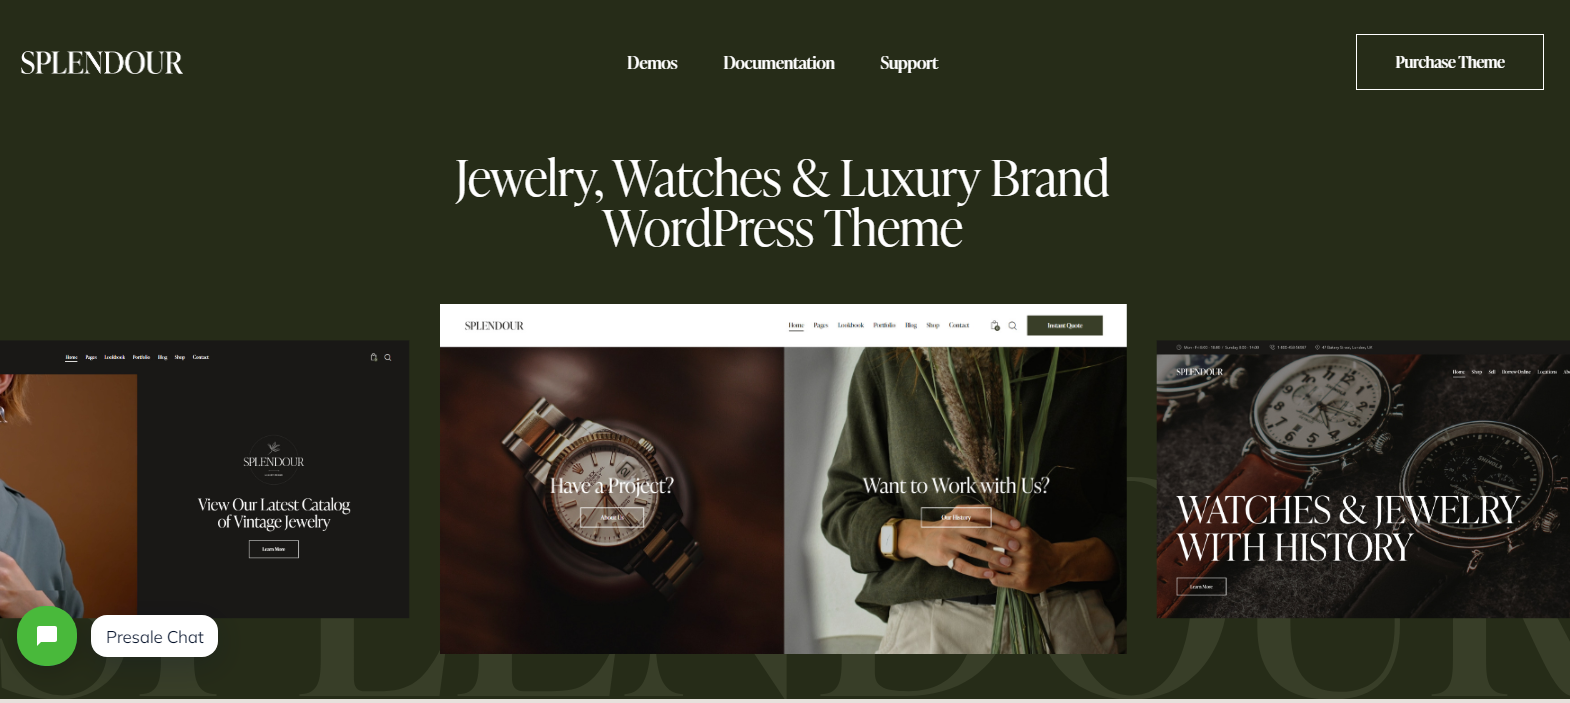 Splendour v1.4 - Jewelry & Watches WordPress Theme